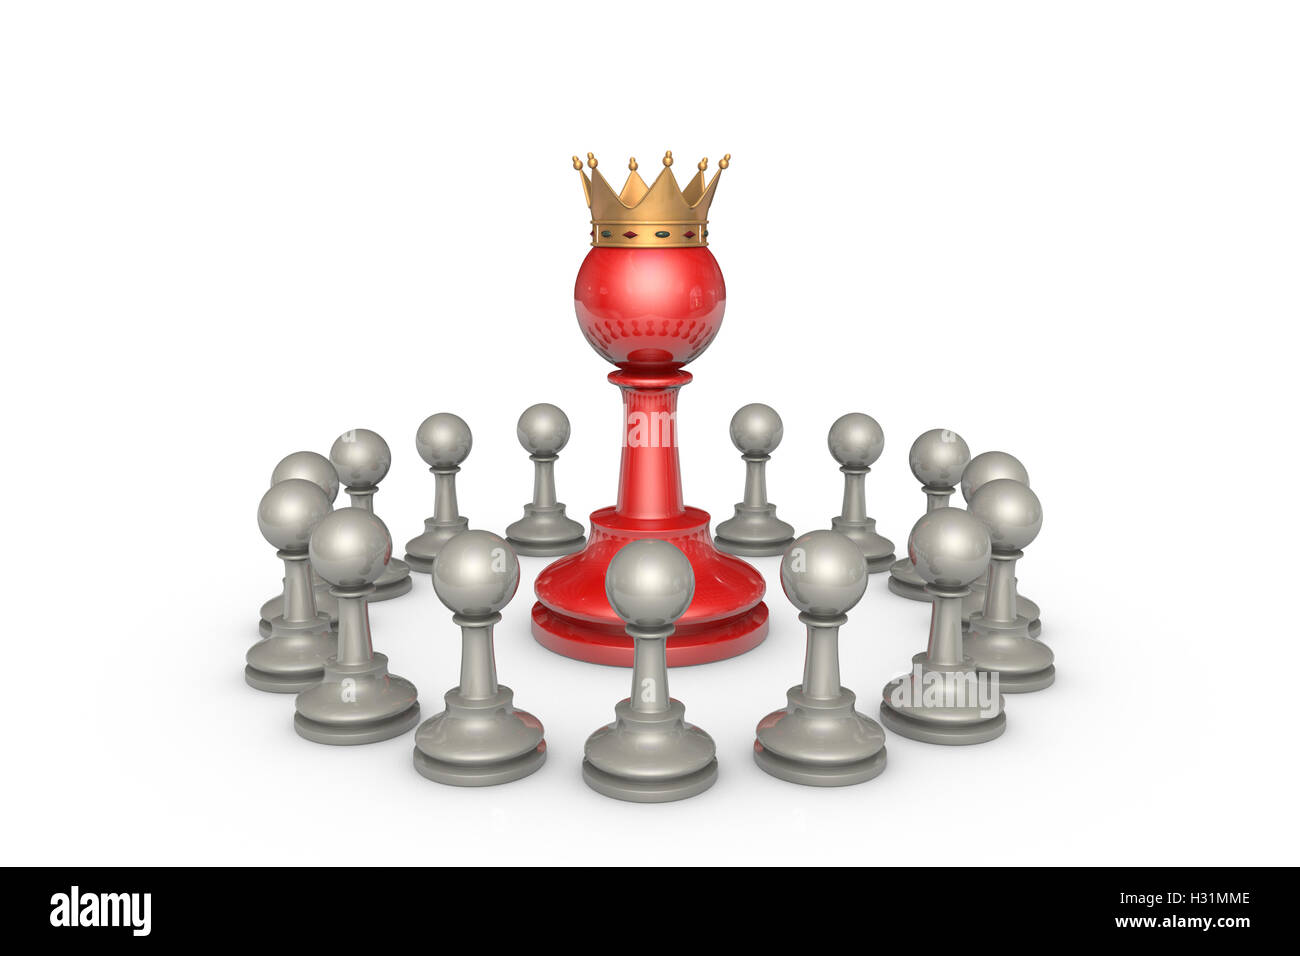 Schachfiguren auf einem weißen Hintergrund. In der Mitte eines großen roten Bauern (mit einer goldenen Krone). Es ist eine Metapher - die parlamentarische Stockfoto